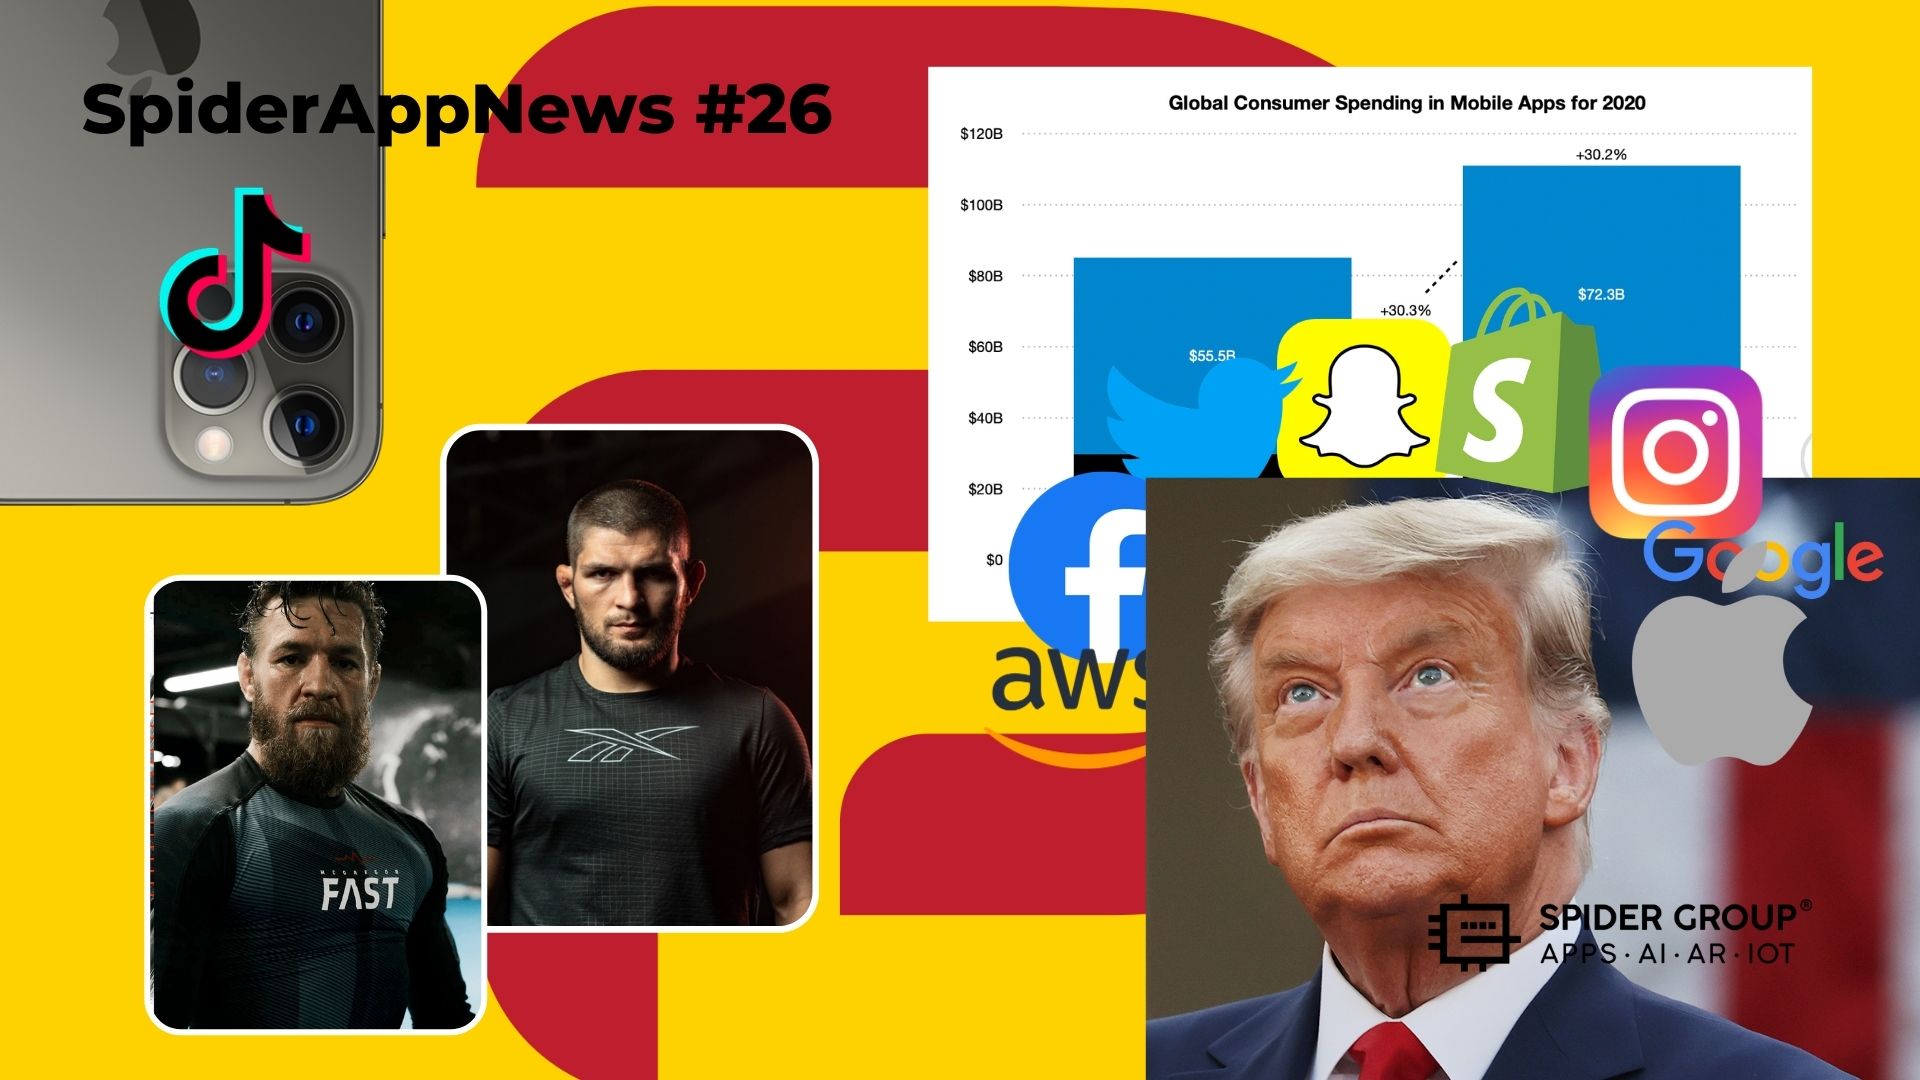 SpiderAppNews 26: Трамп под цензурой, выключение Parler, расходы в приложениях 2020